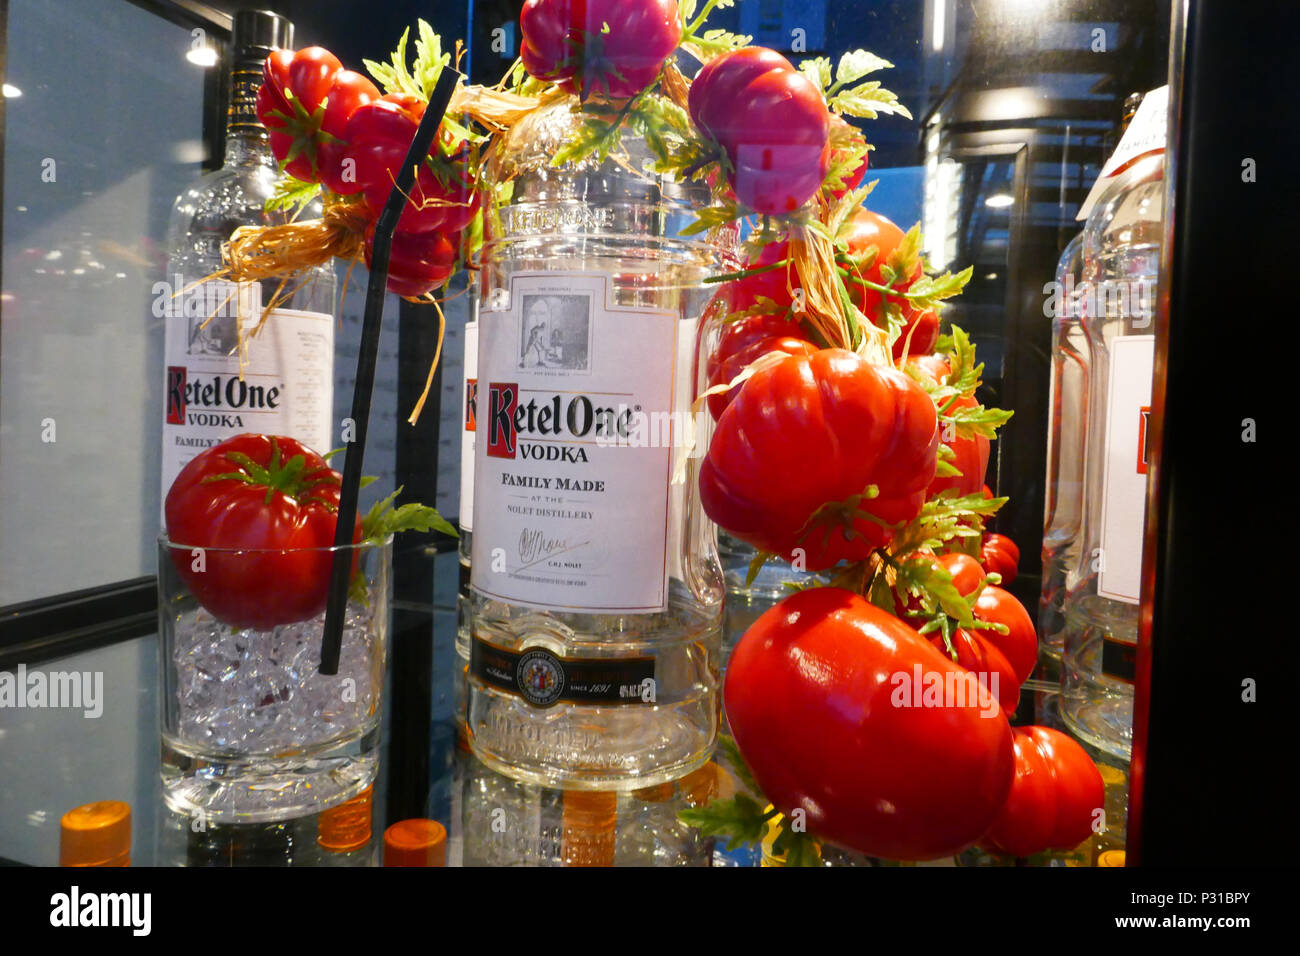 Förderung Flaschen mit ketel One für den Export an Shop von Nolet, Schiedam, Niederlande Stockfoto